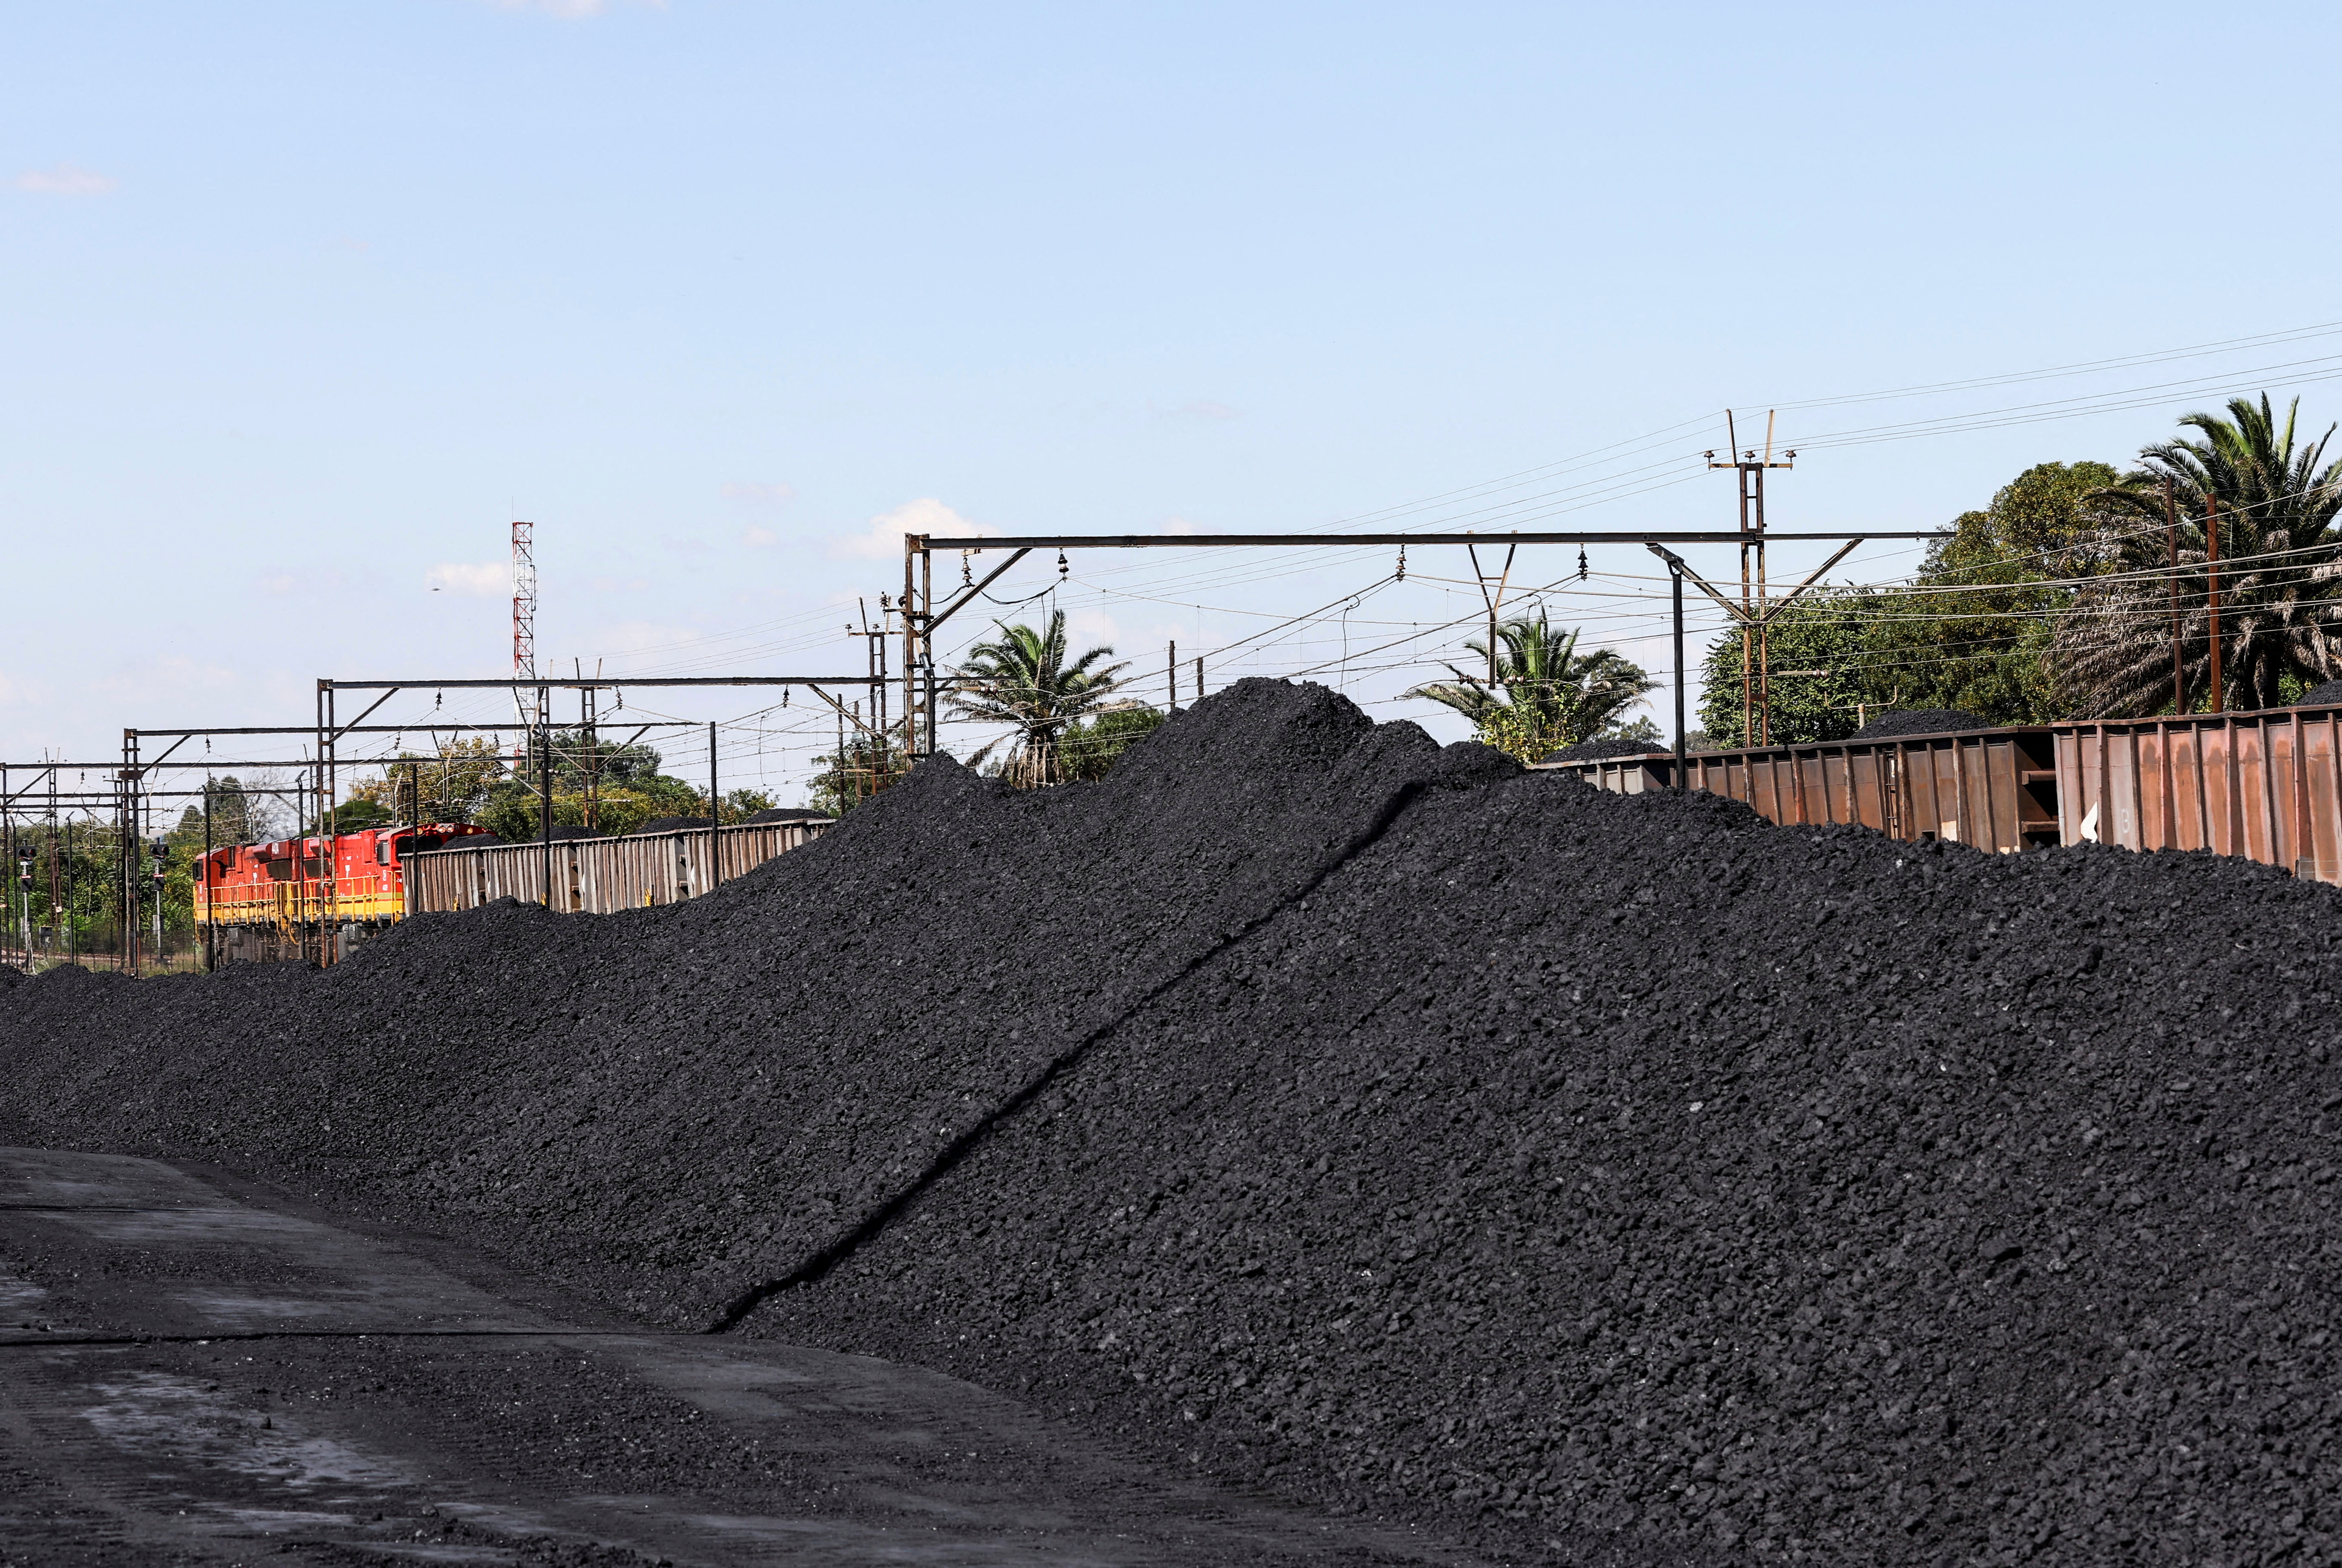 Les mineurs de charbon sud-africains envisagent des investissements dans le rail alors que l'effondrement des infrastructures fait baisser les exportations